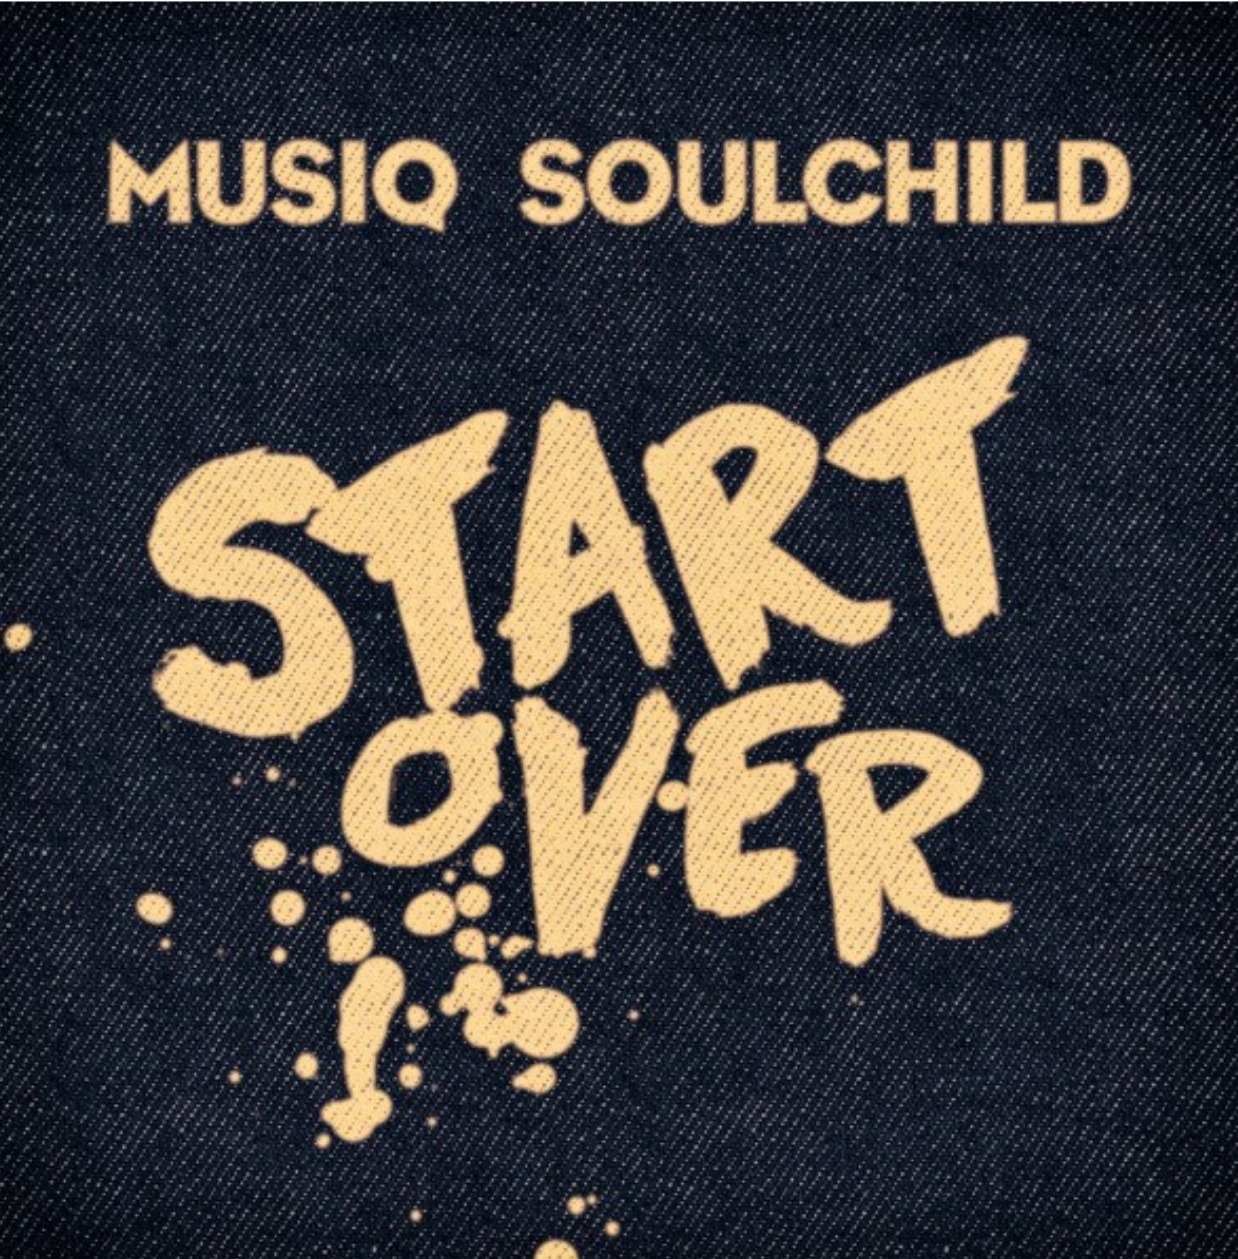 New Music: Musiq Soulchild - Start Over + Announces New Album for Summer Release